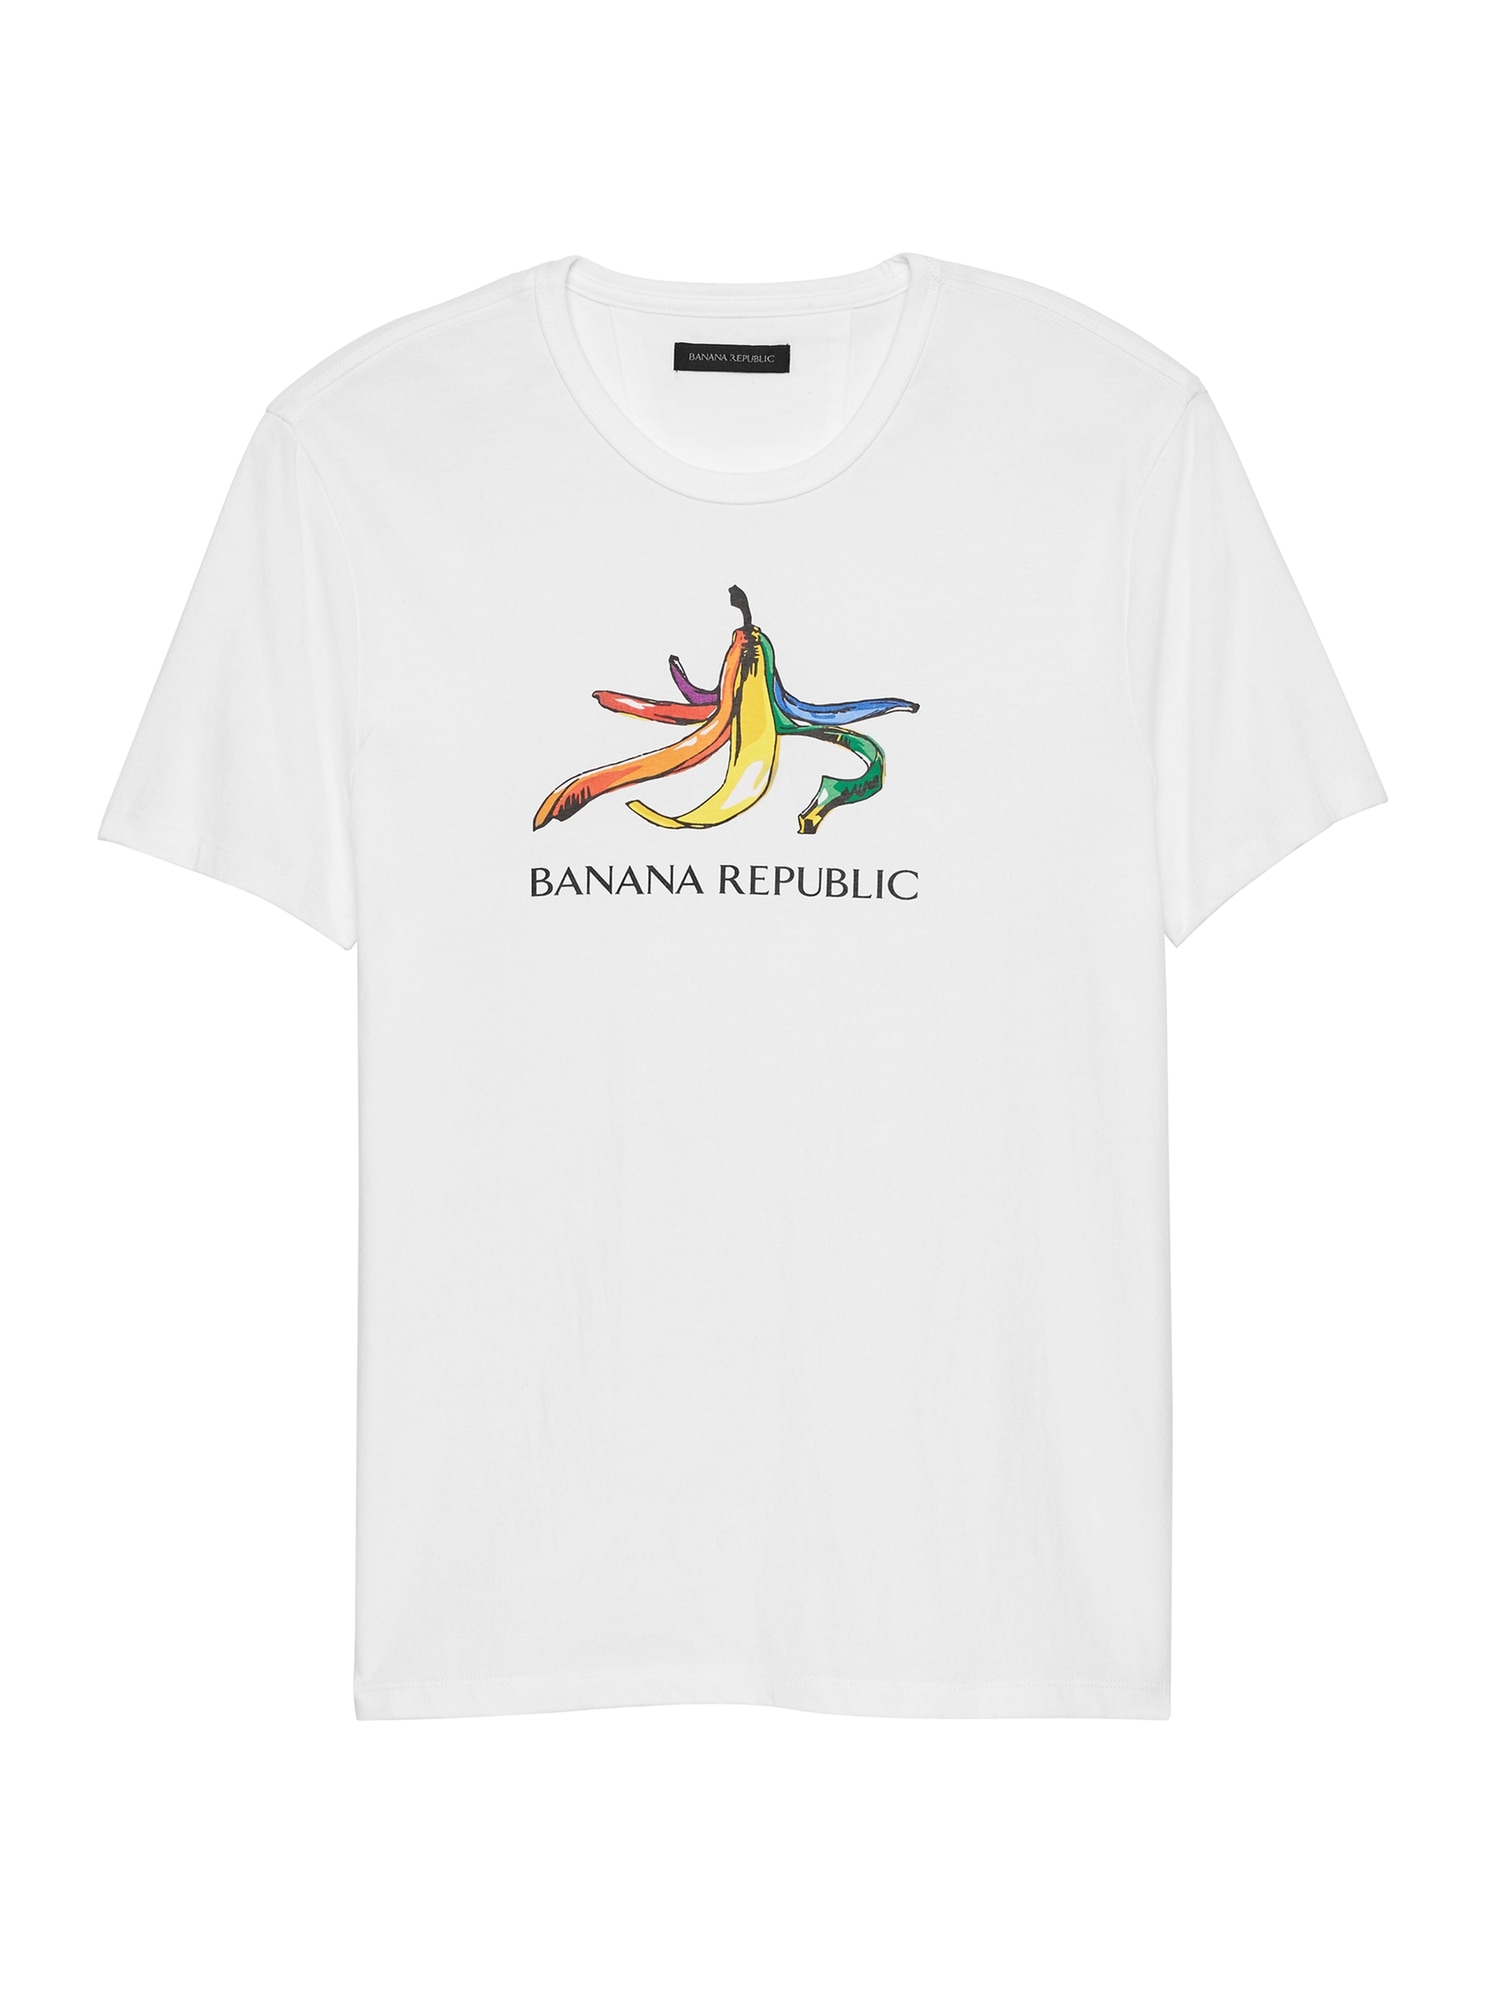 Pride 2020 Rainbow Banana T-Shirt (Men's Sizes)